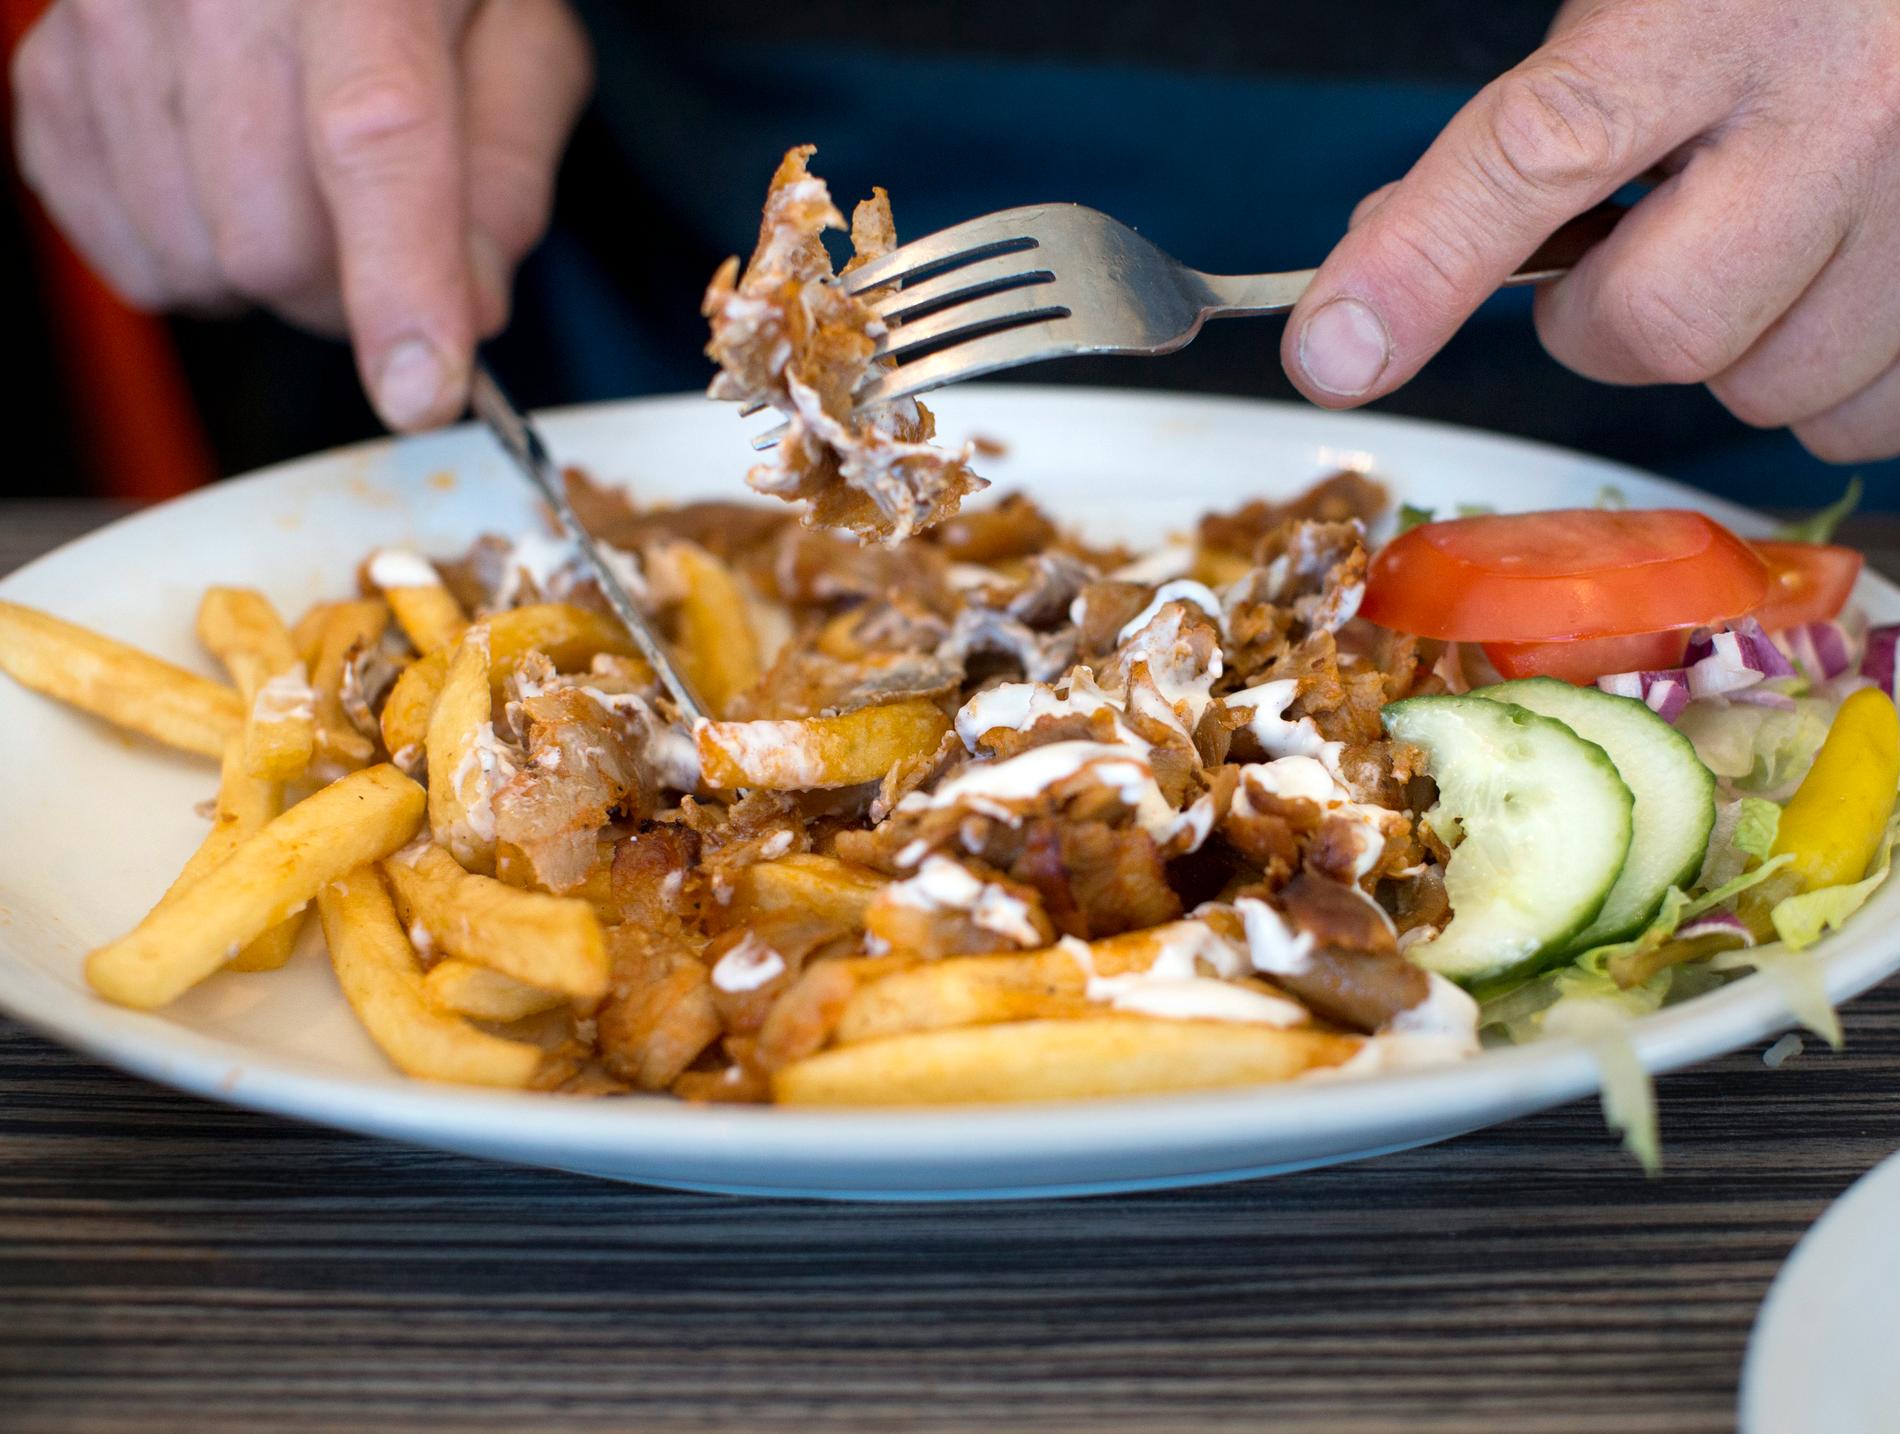 Håbo kommun lät restauranger servera mat i strid med coronareglerna.